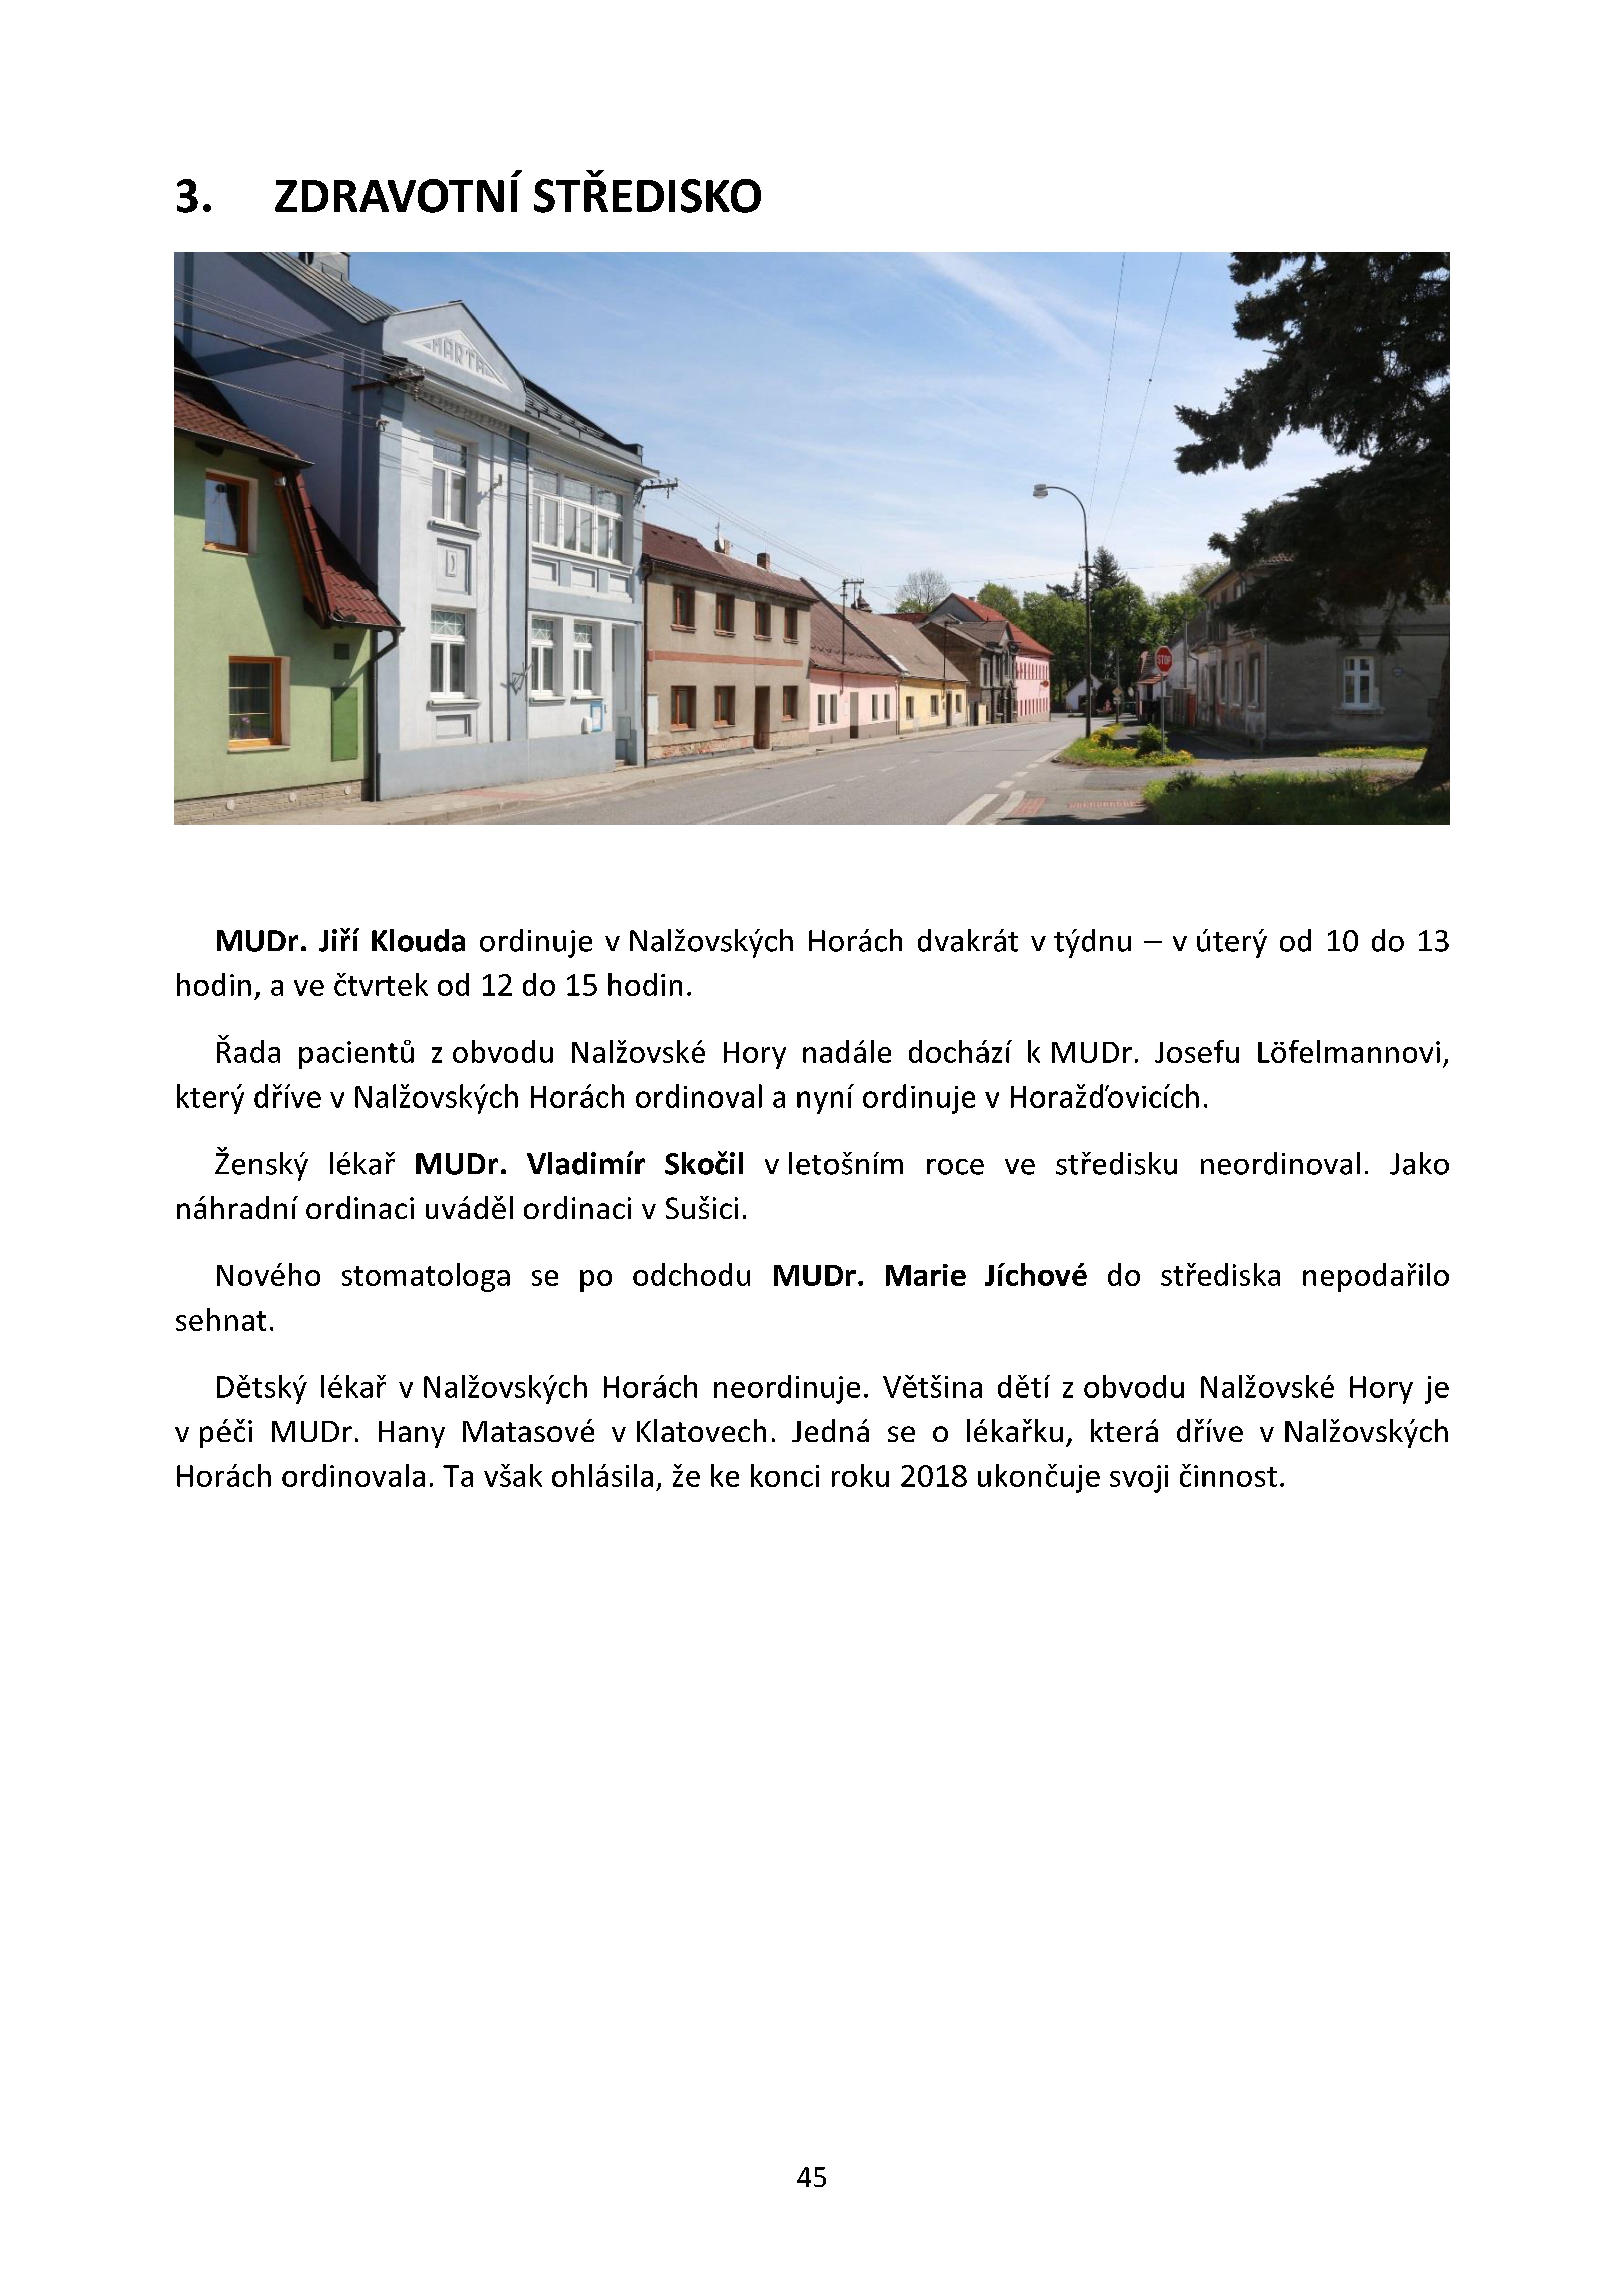 45. soap-kt_01718_obec-nalzovske-hory-2018_0450